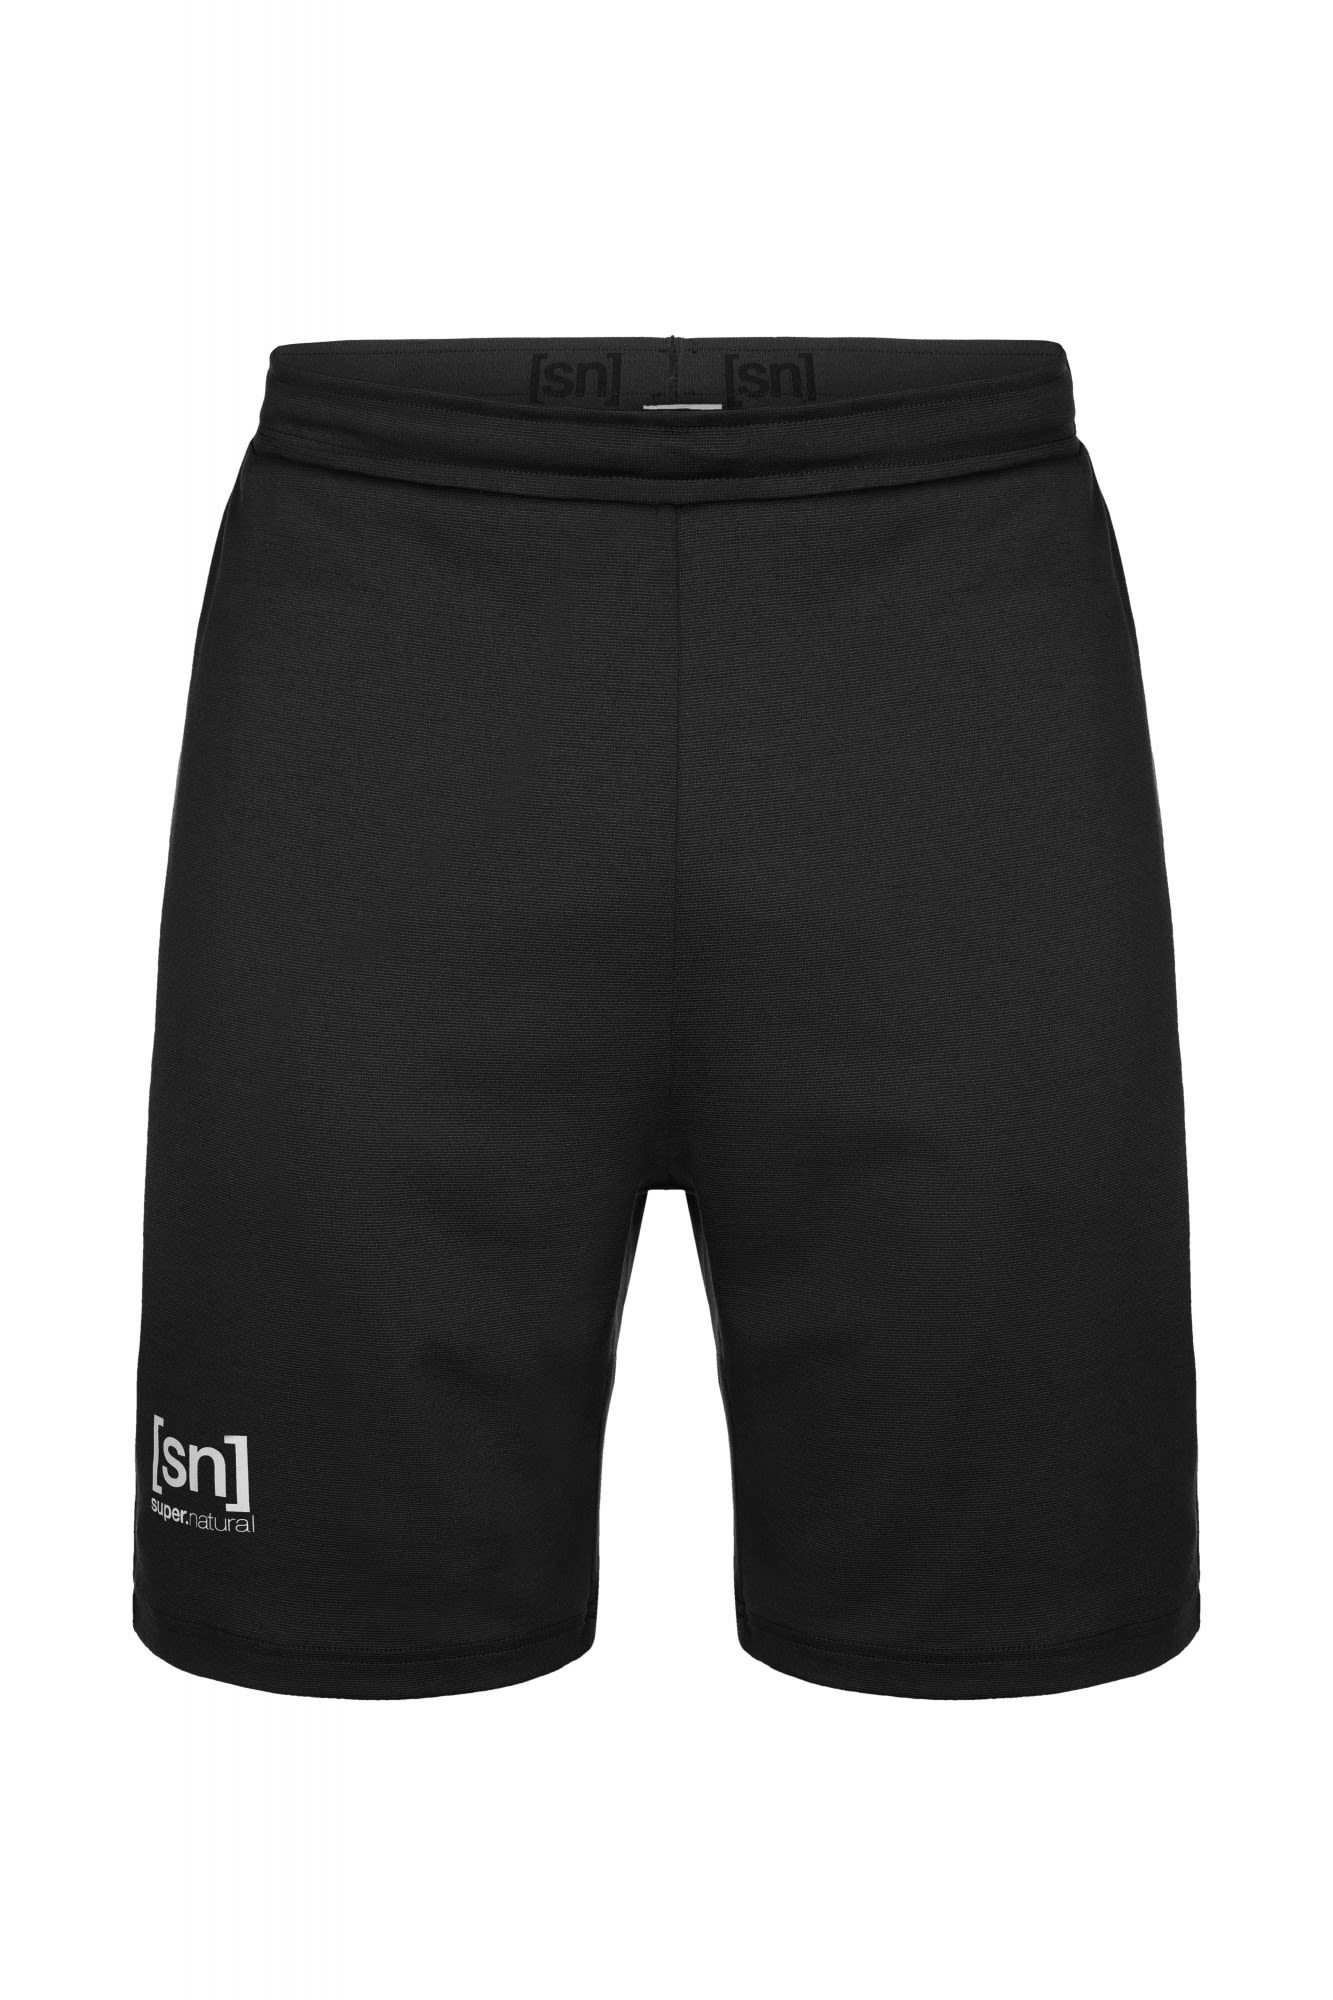 SUPER.NATURAL Strandshorts Super.natural M Movement Shorts Herren Shorts Grey Black